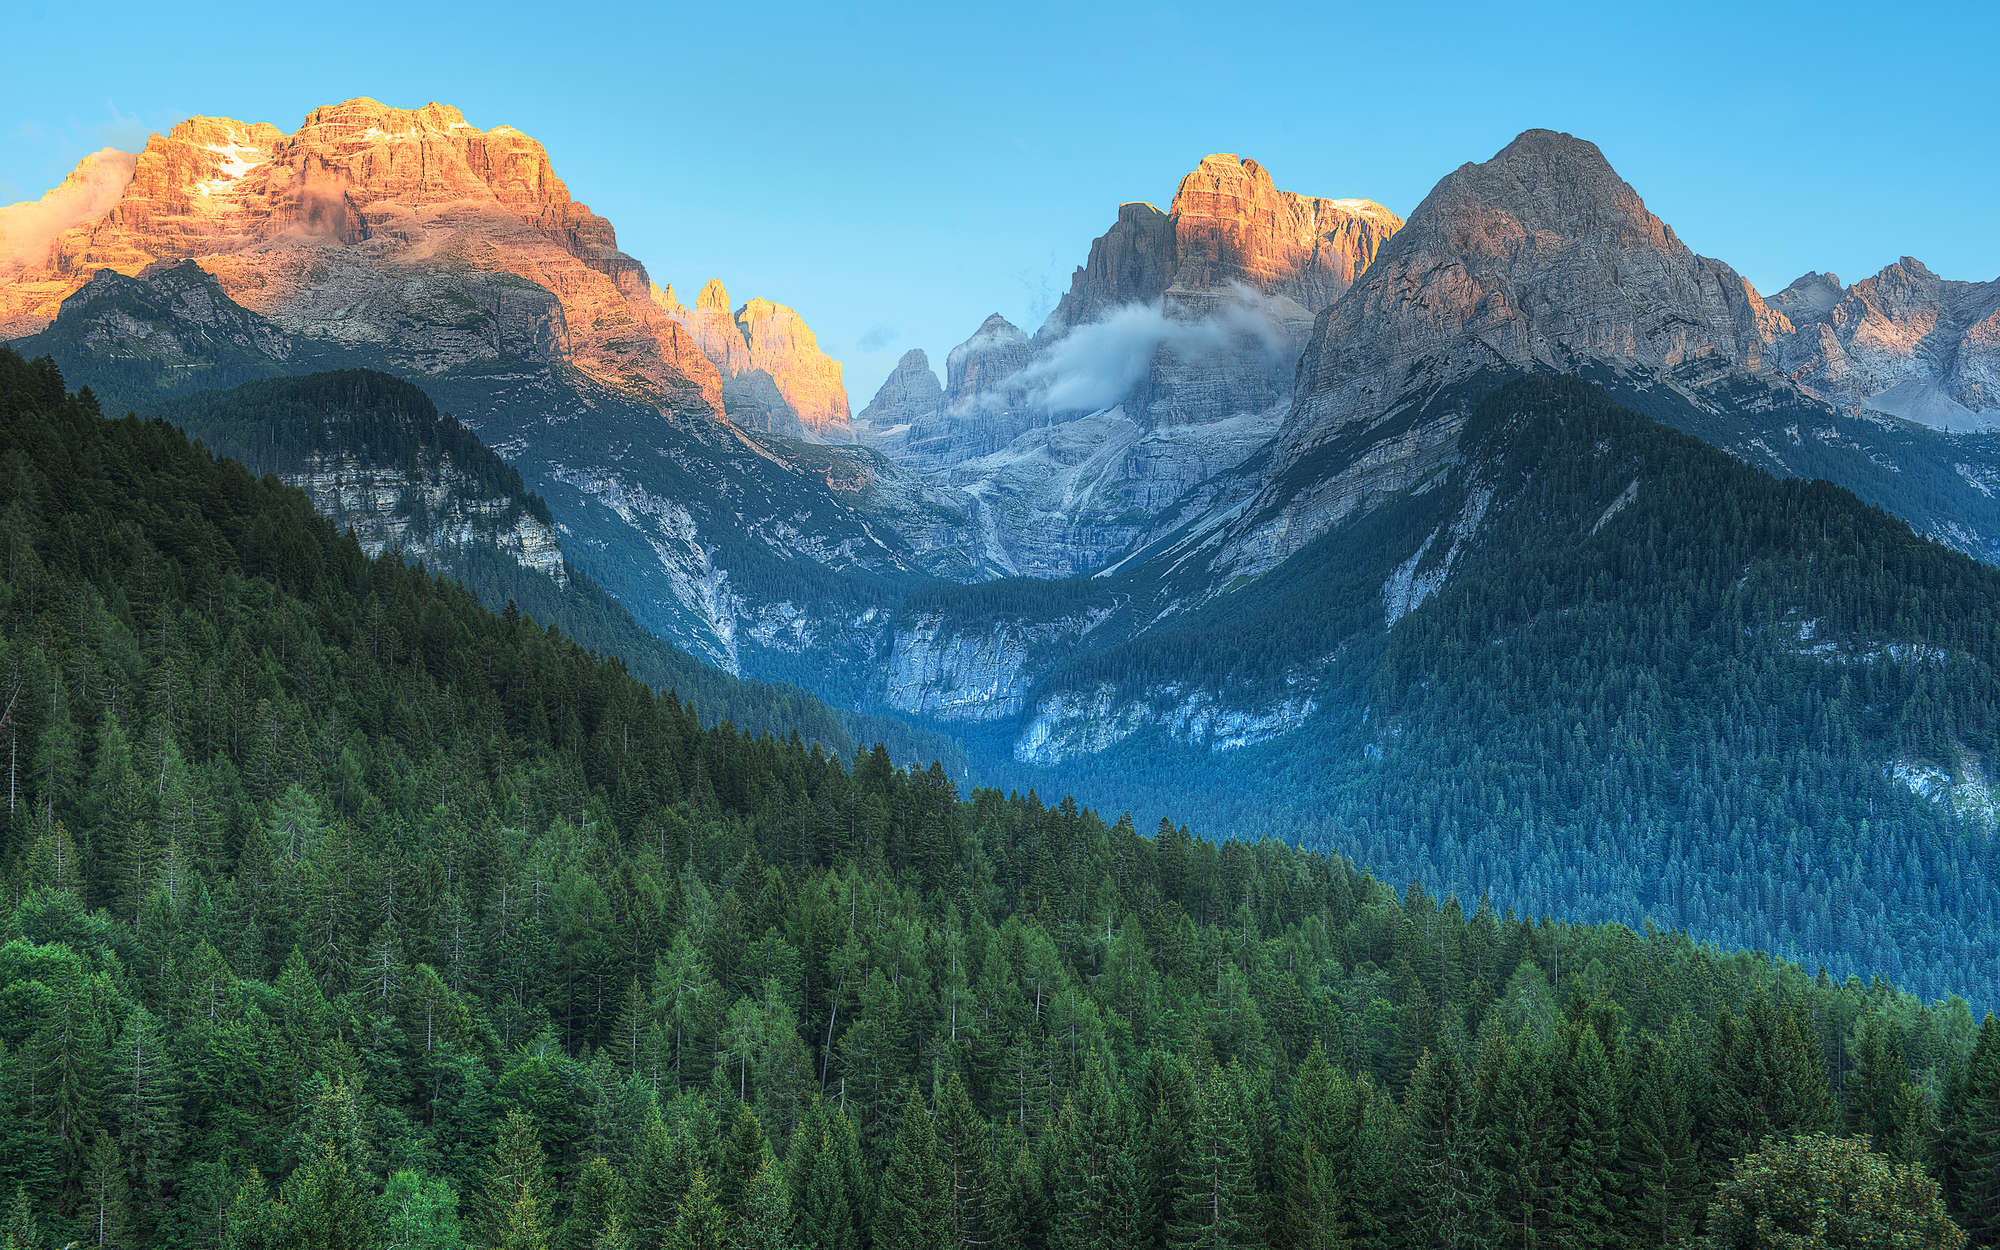             Fotomural Montañas Dolomitas en Italia - tejido no tejido liso de alta calidad
        